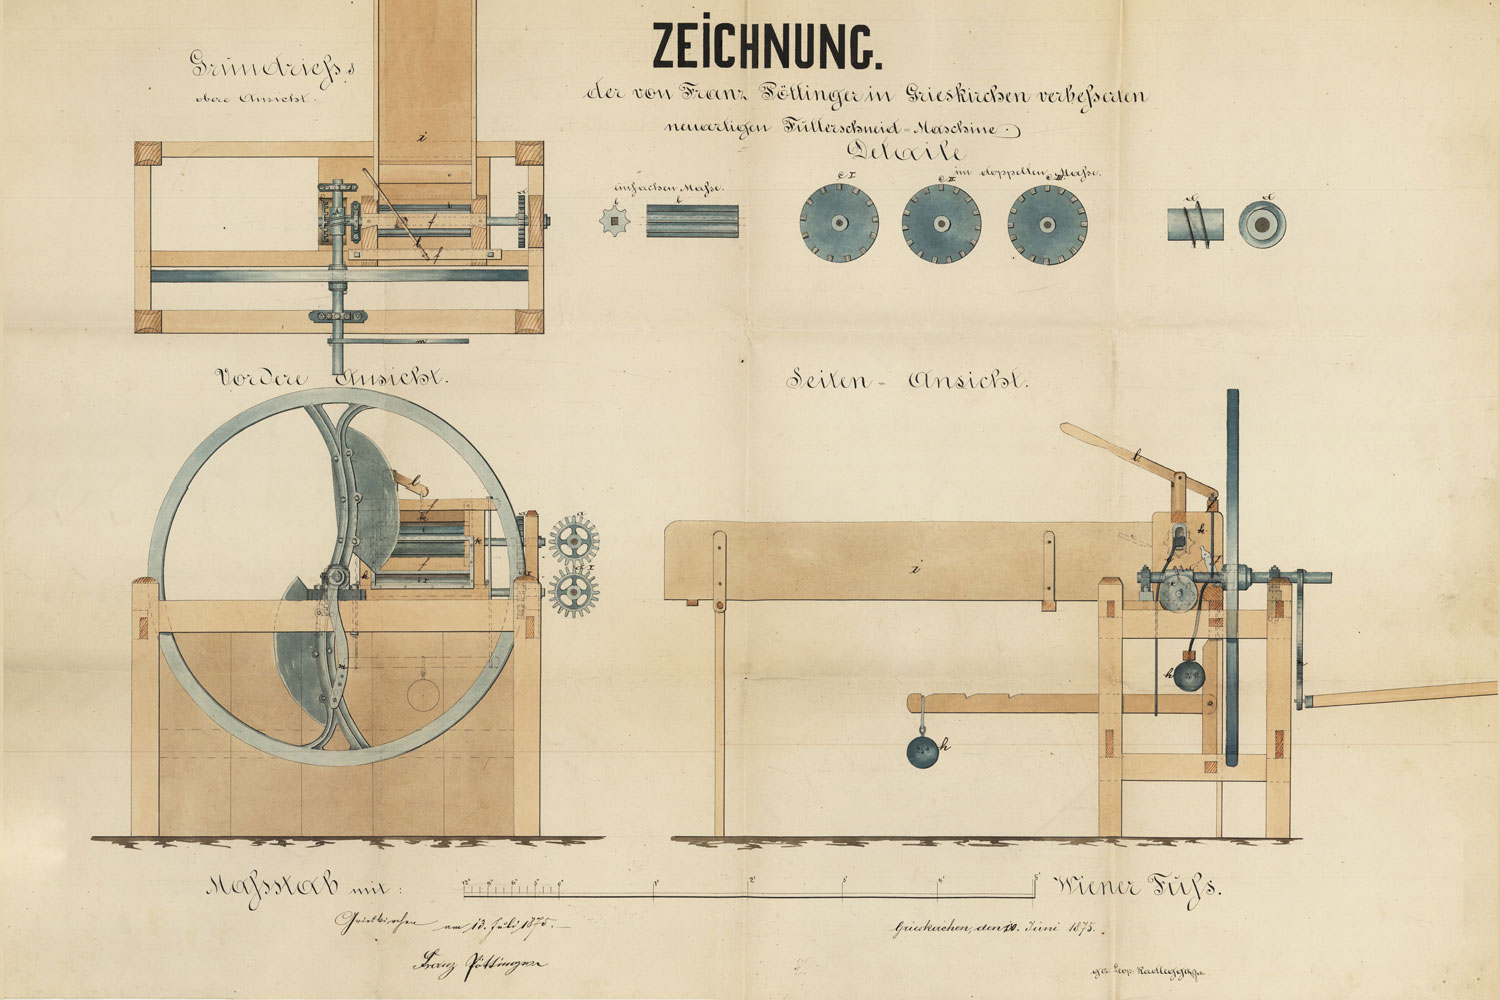 1875: Pierwszy patent